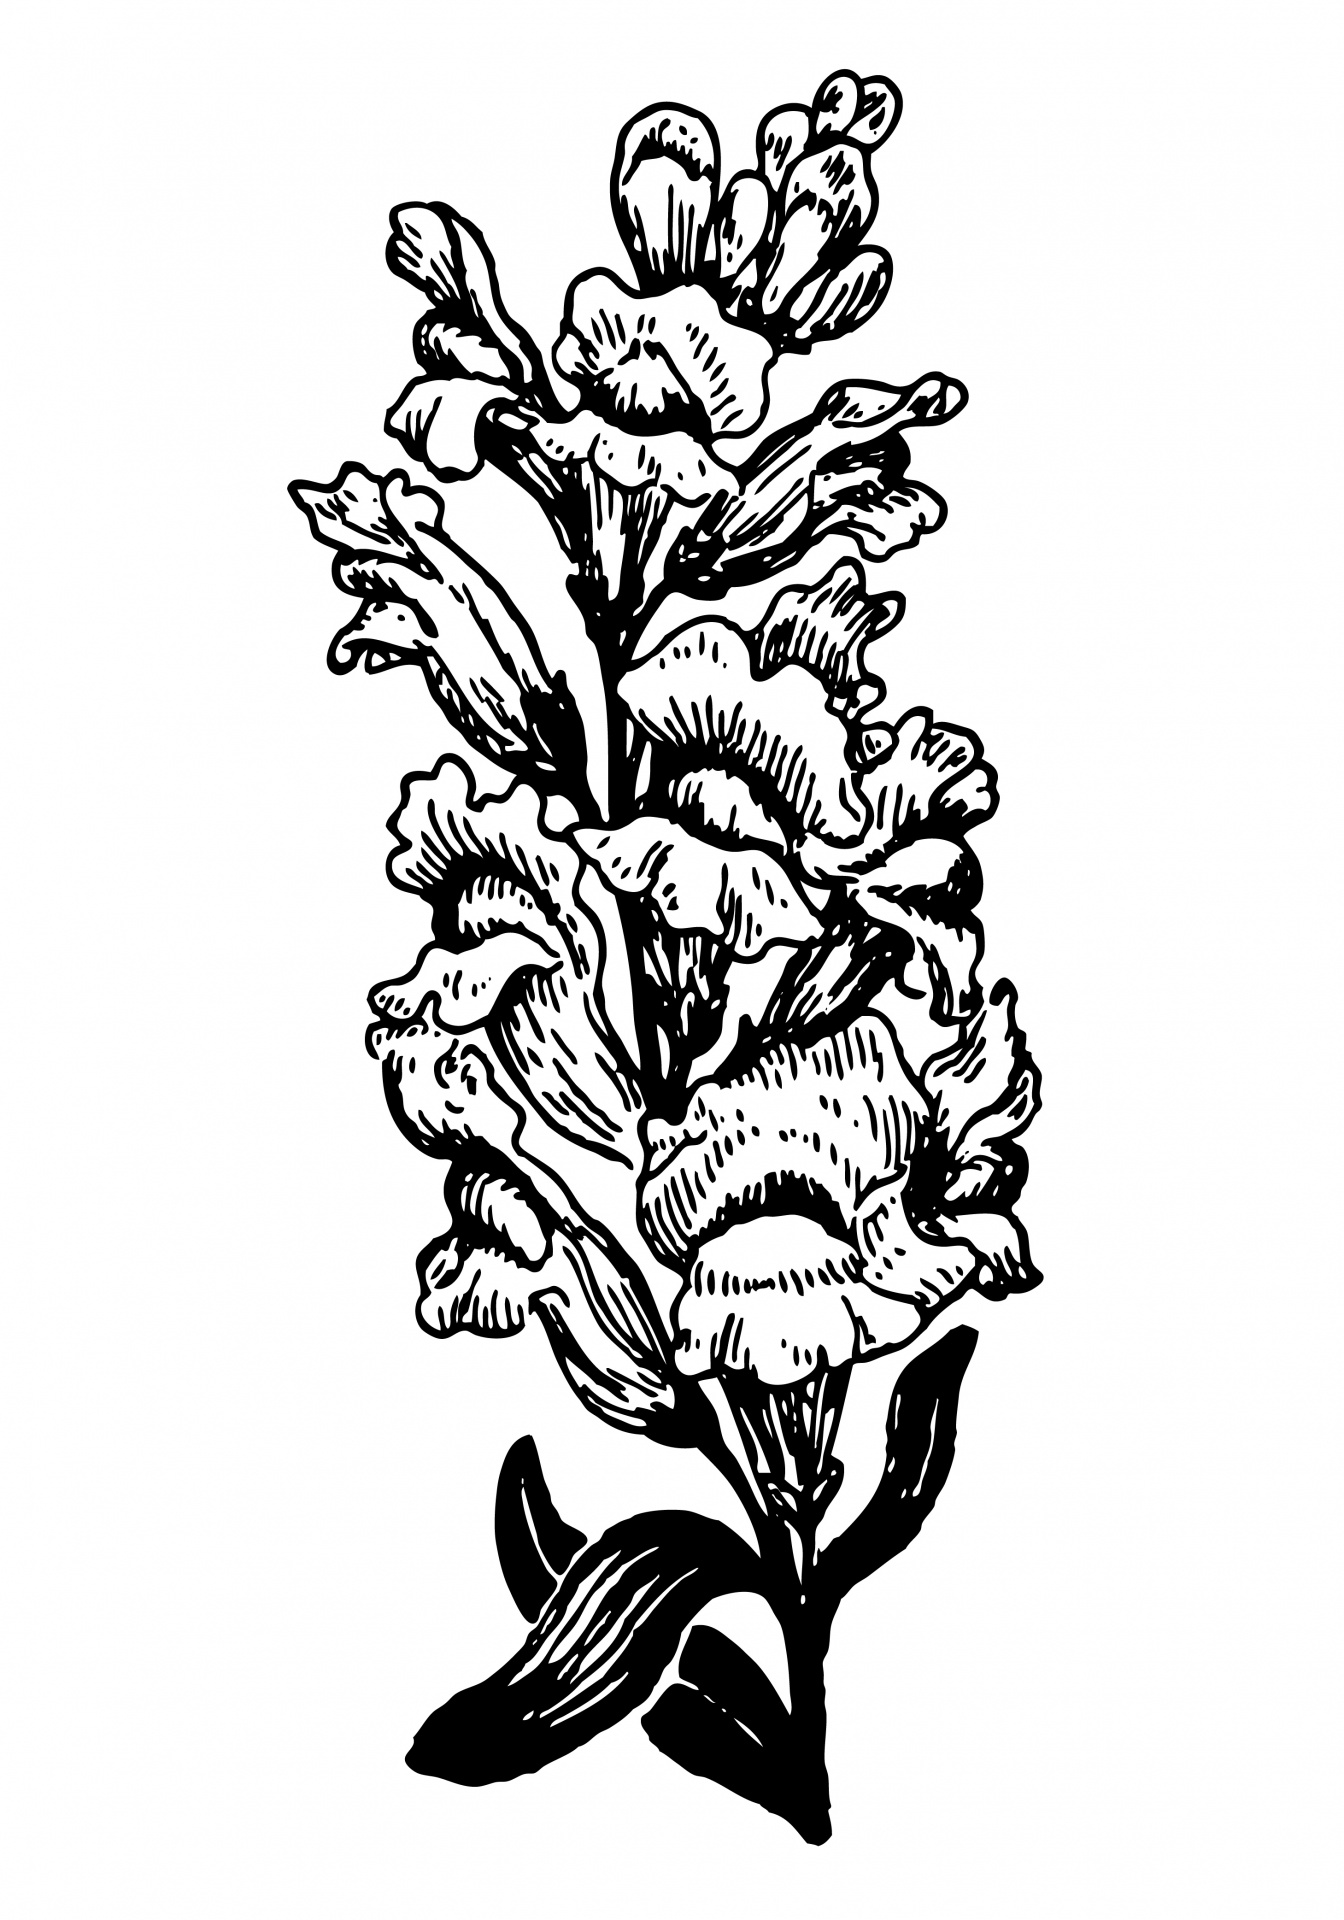 キンギョソウの花のイラスト